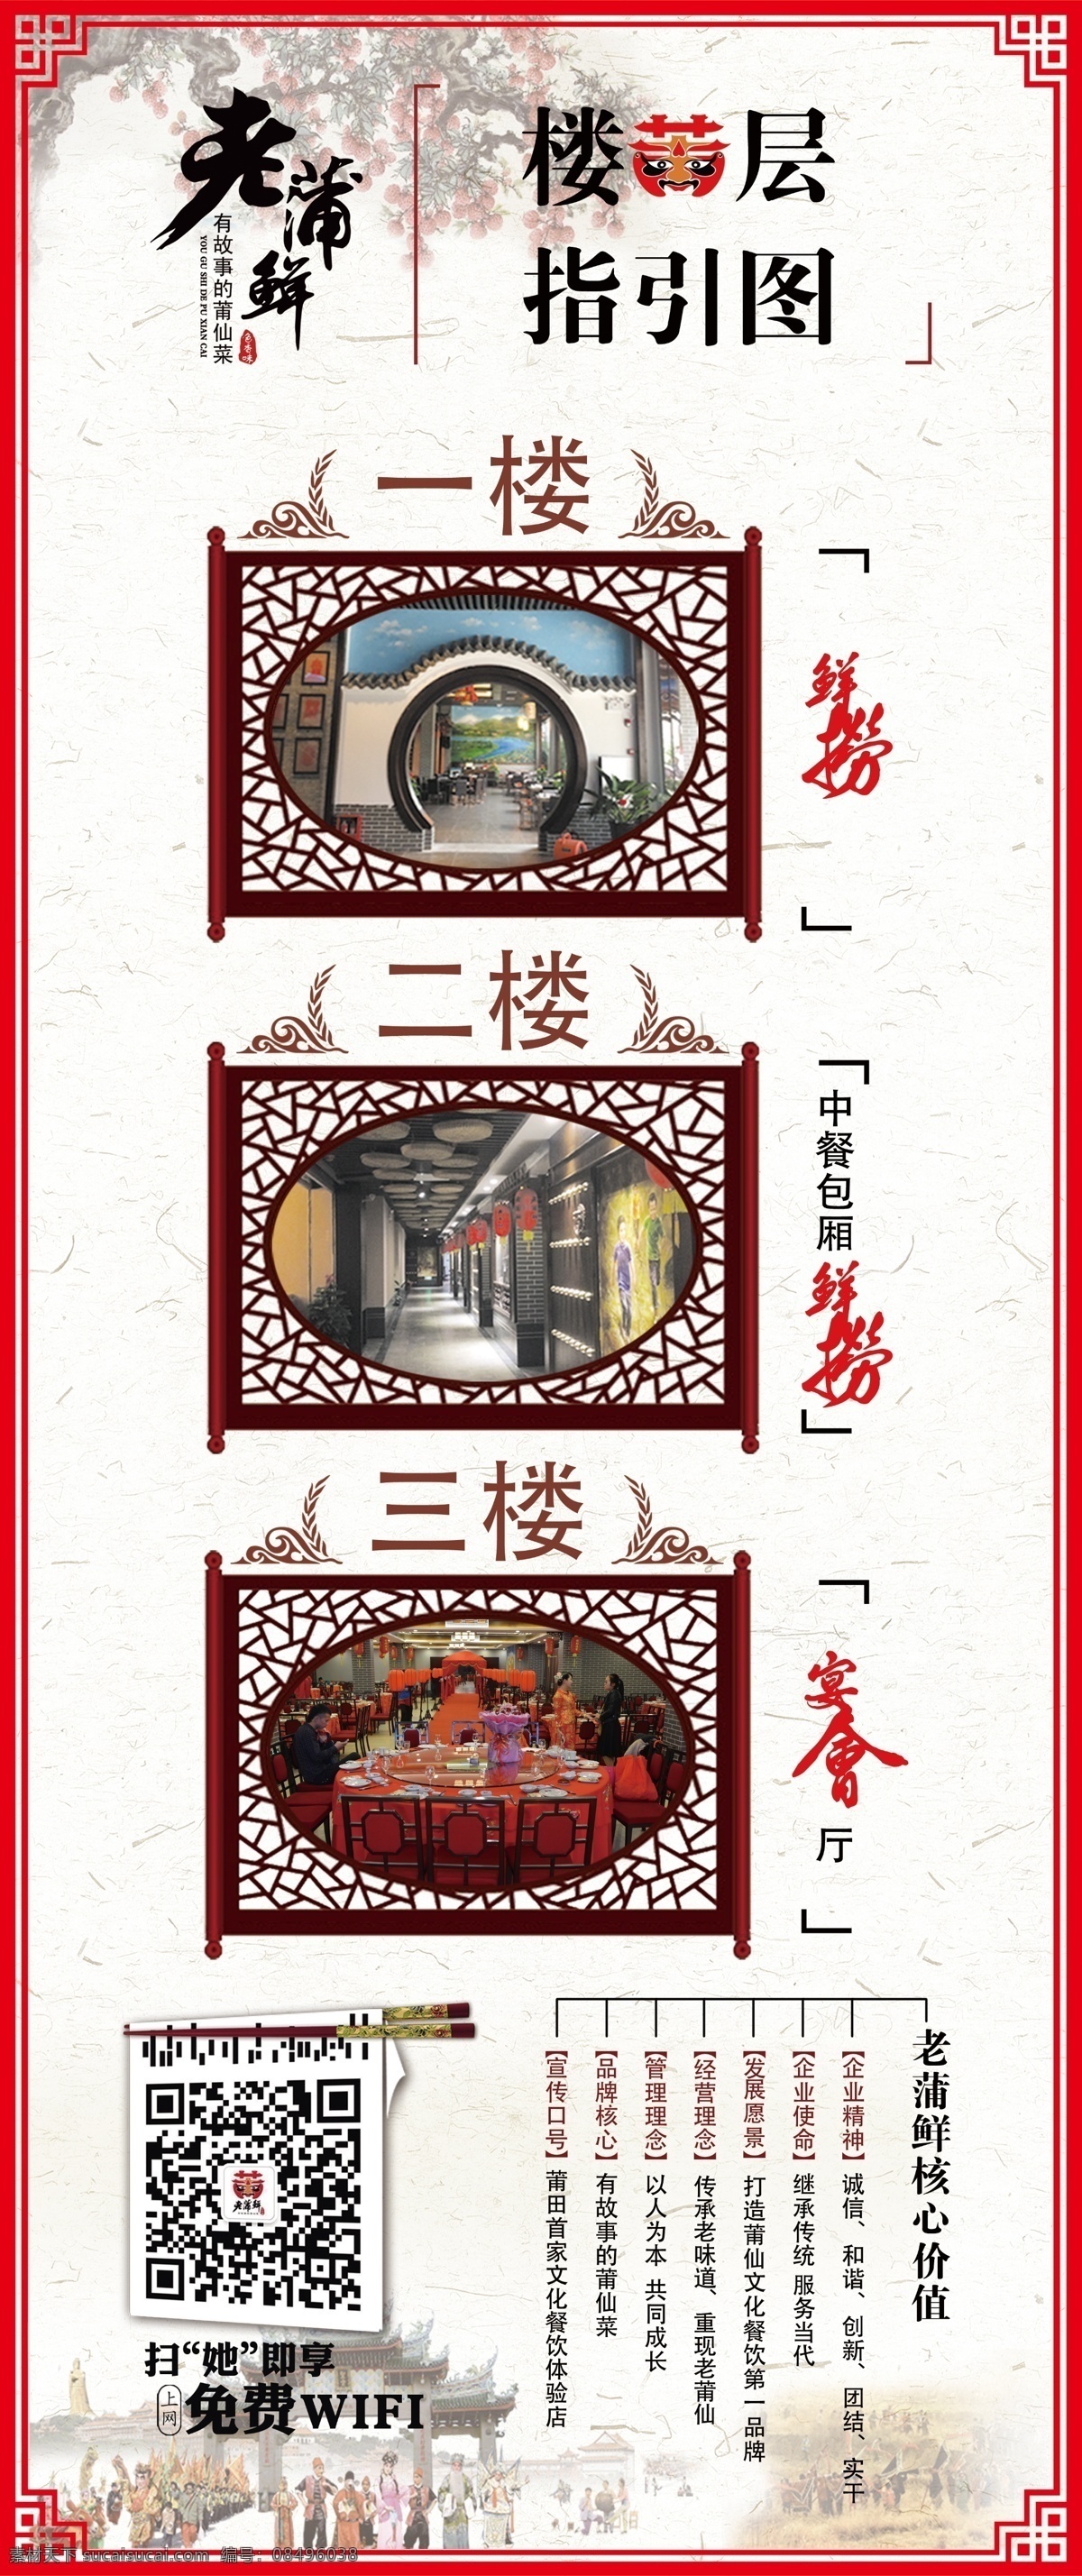 楼层指示牌 楼层 指示牌 中国风 复古 国风 古风 海报 文创美食餐厅